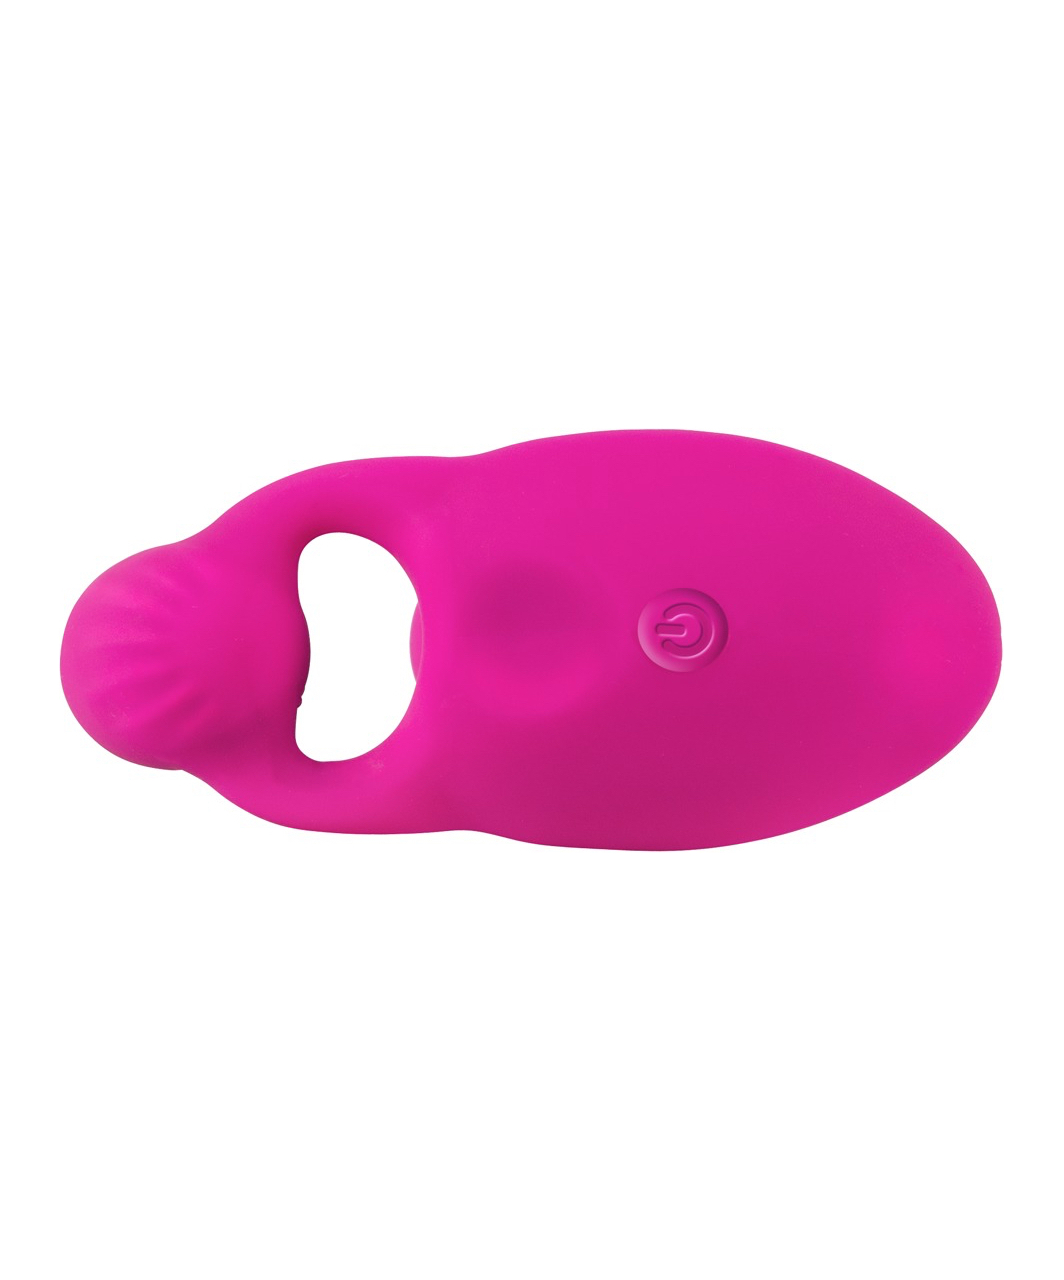 Smile Clitoris & G-spot Remote Control vibrators